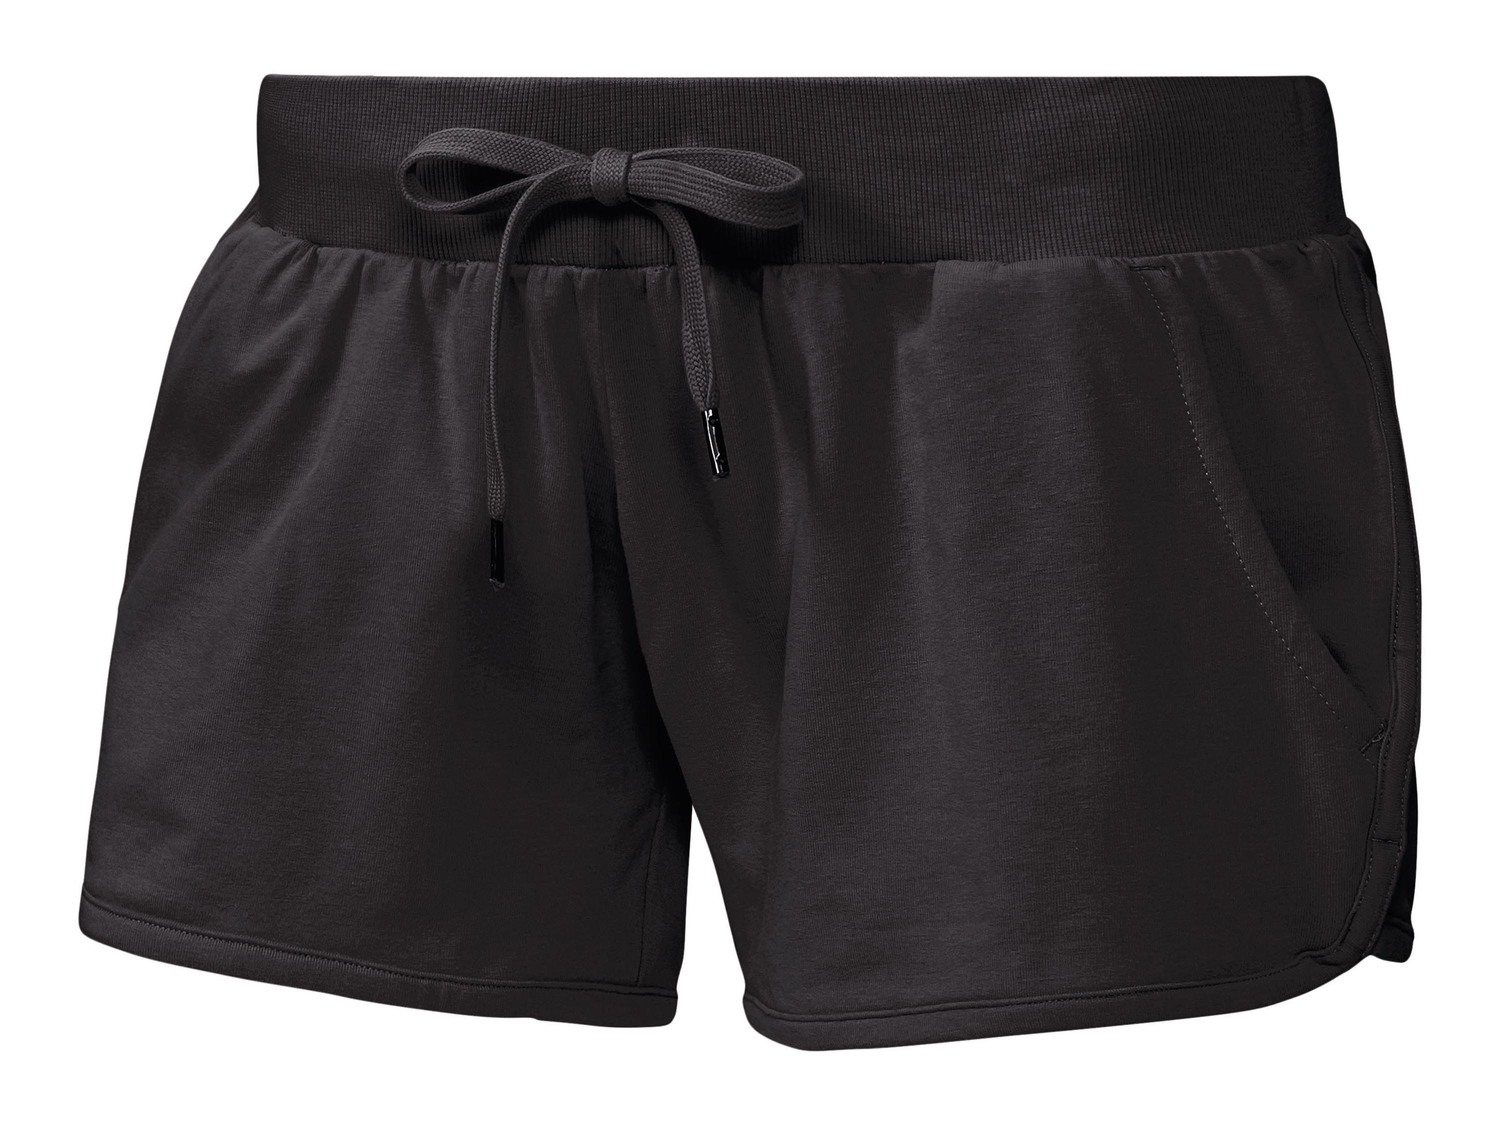 Shorts sportivi da donna Crivit, prezzo 5.99 &#8364;  
Misure: S-L
- Oeko tex NEW